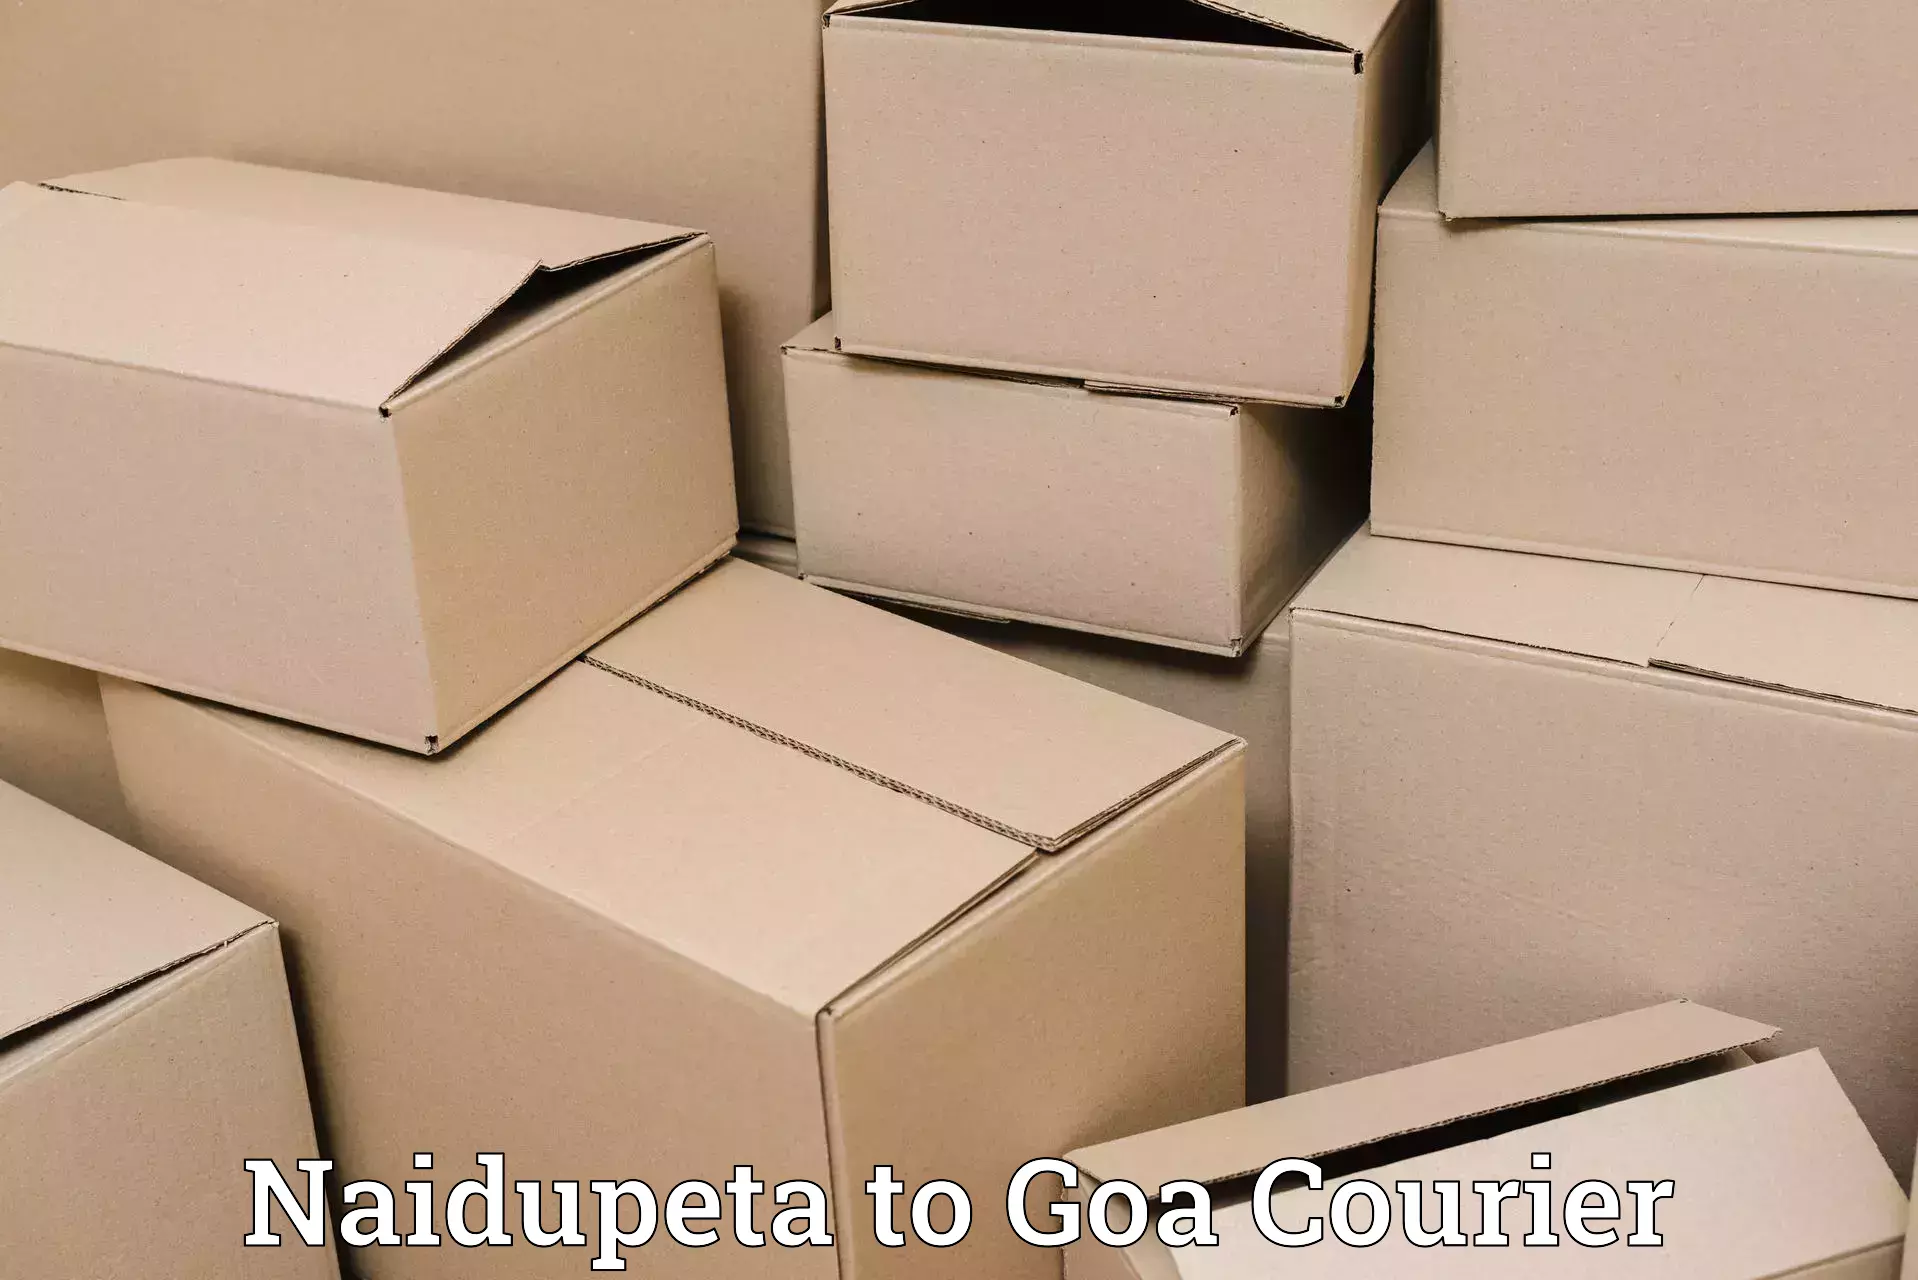 Cash on delivery service Naidupeta to Sanvordem